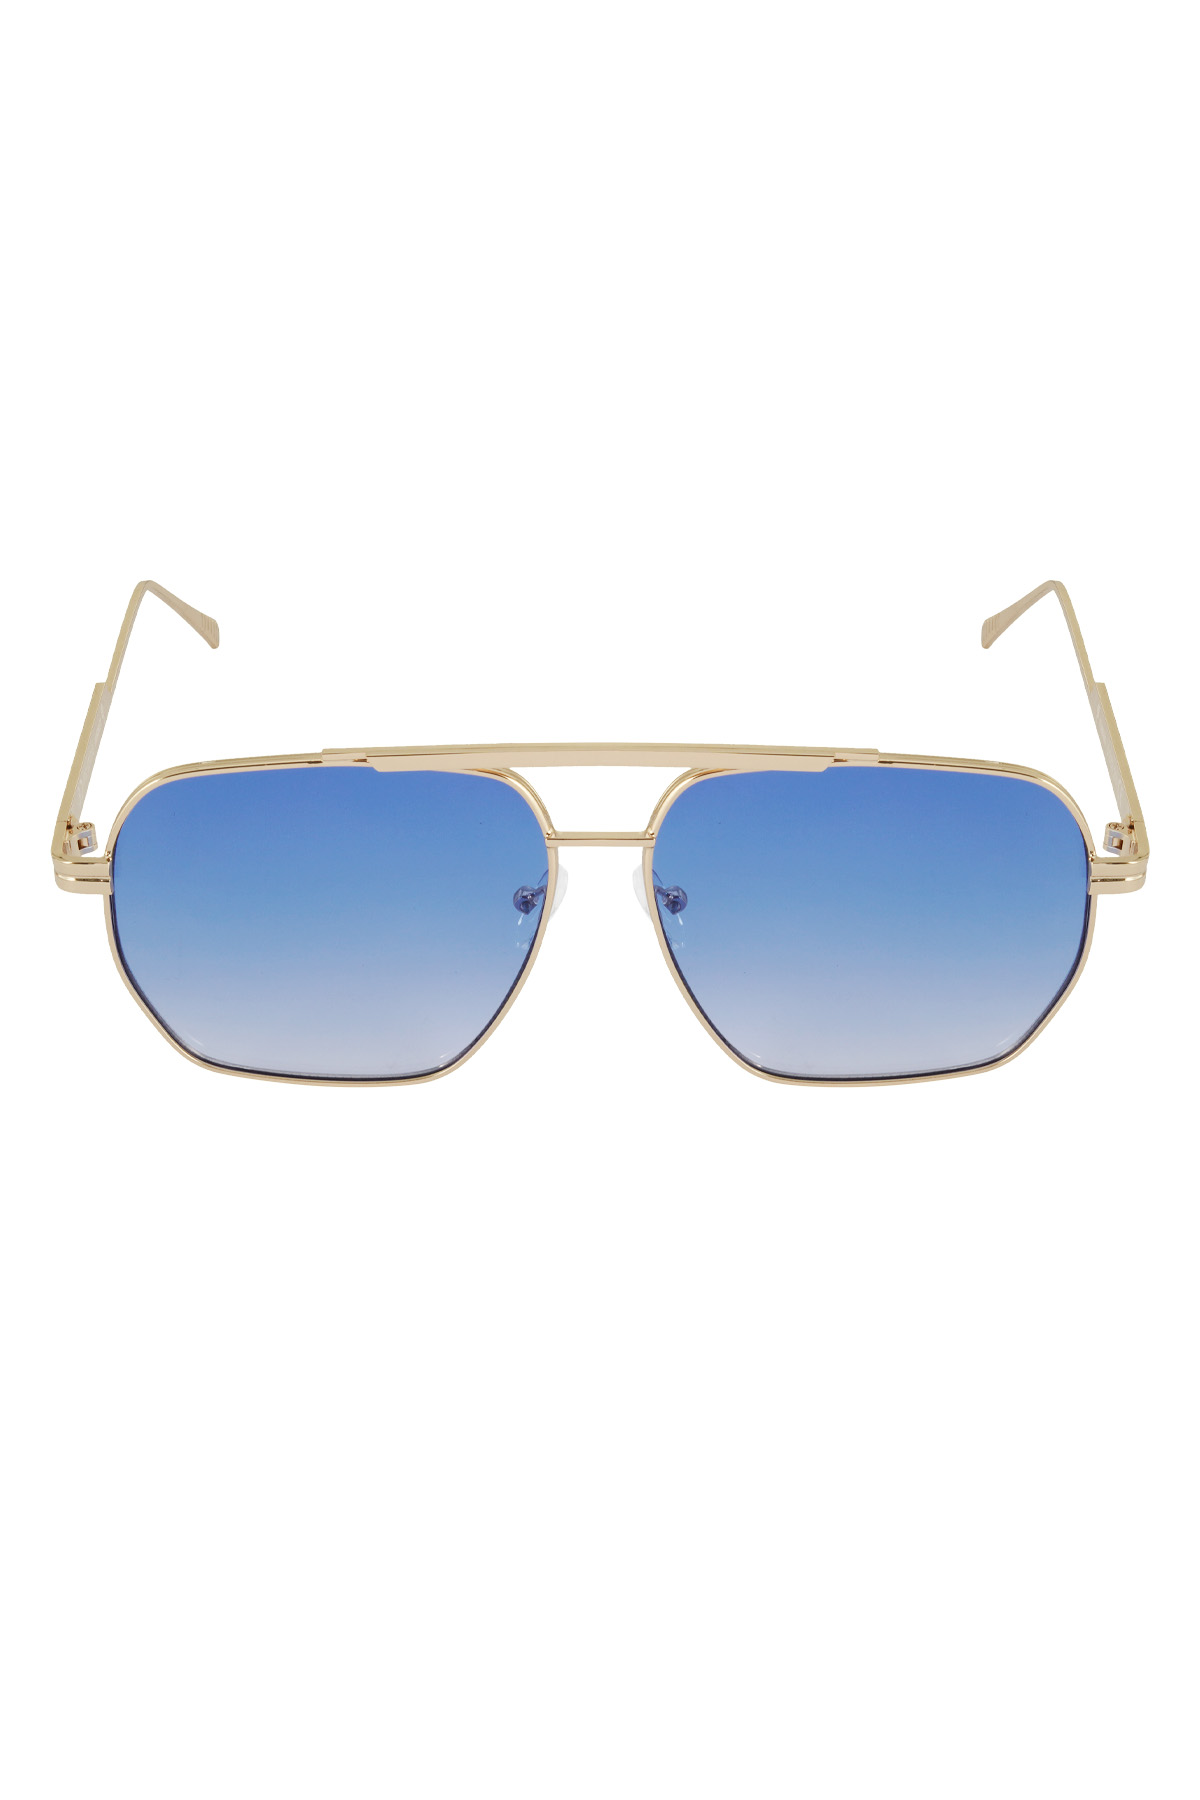 Sommersonnenbrille aus Metall – Blau und Gold h5 Bild4